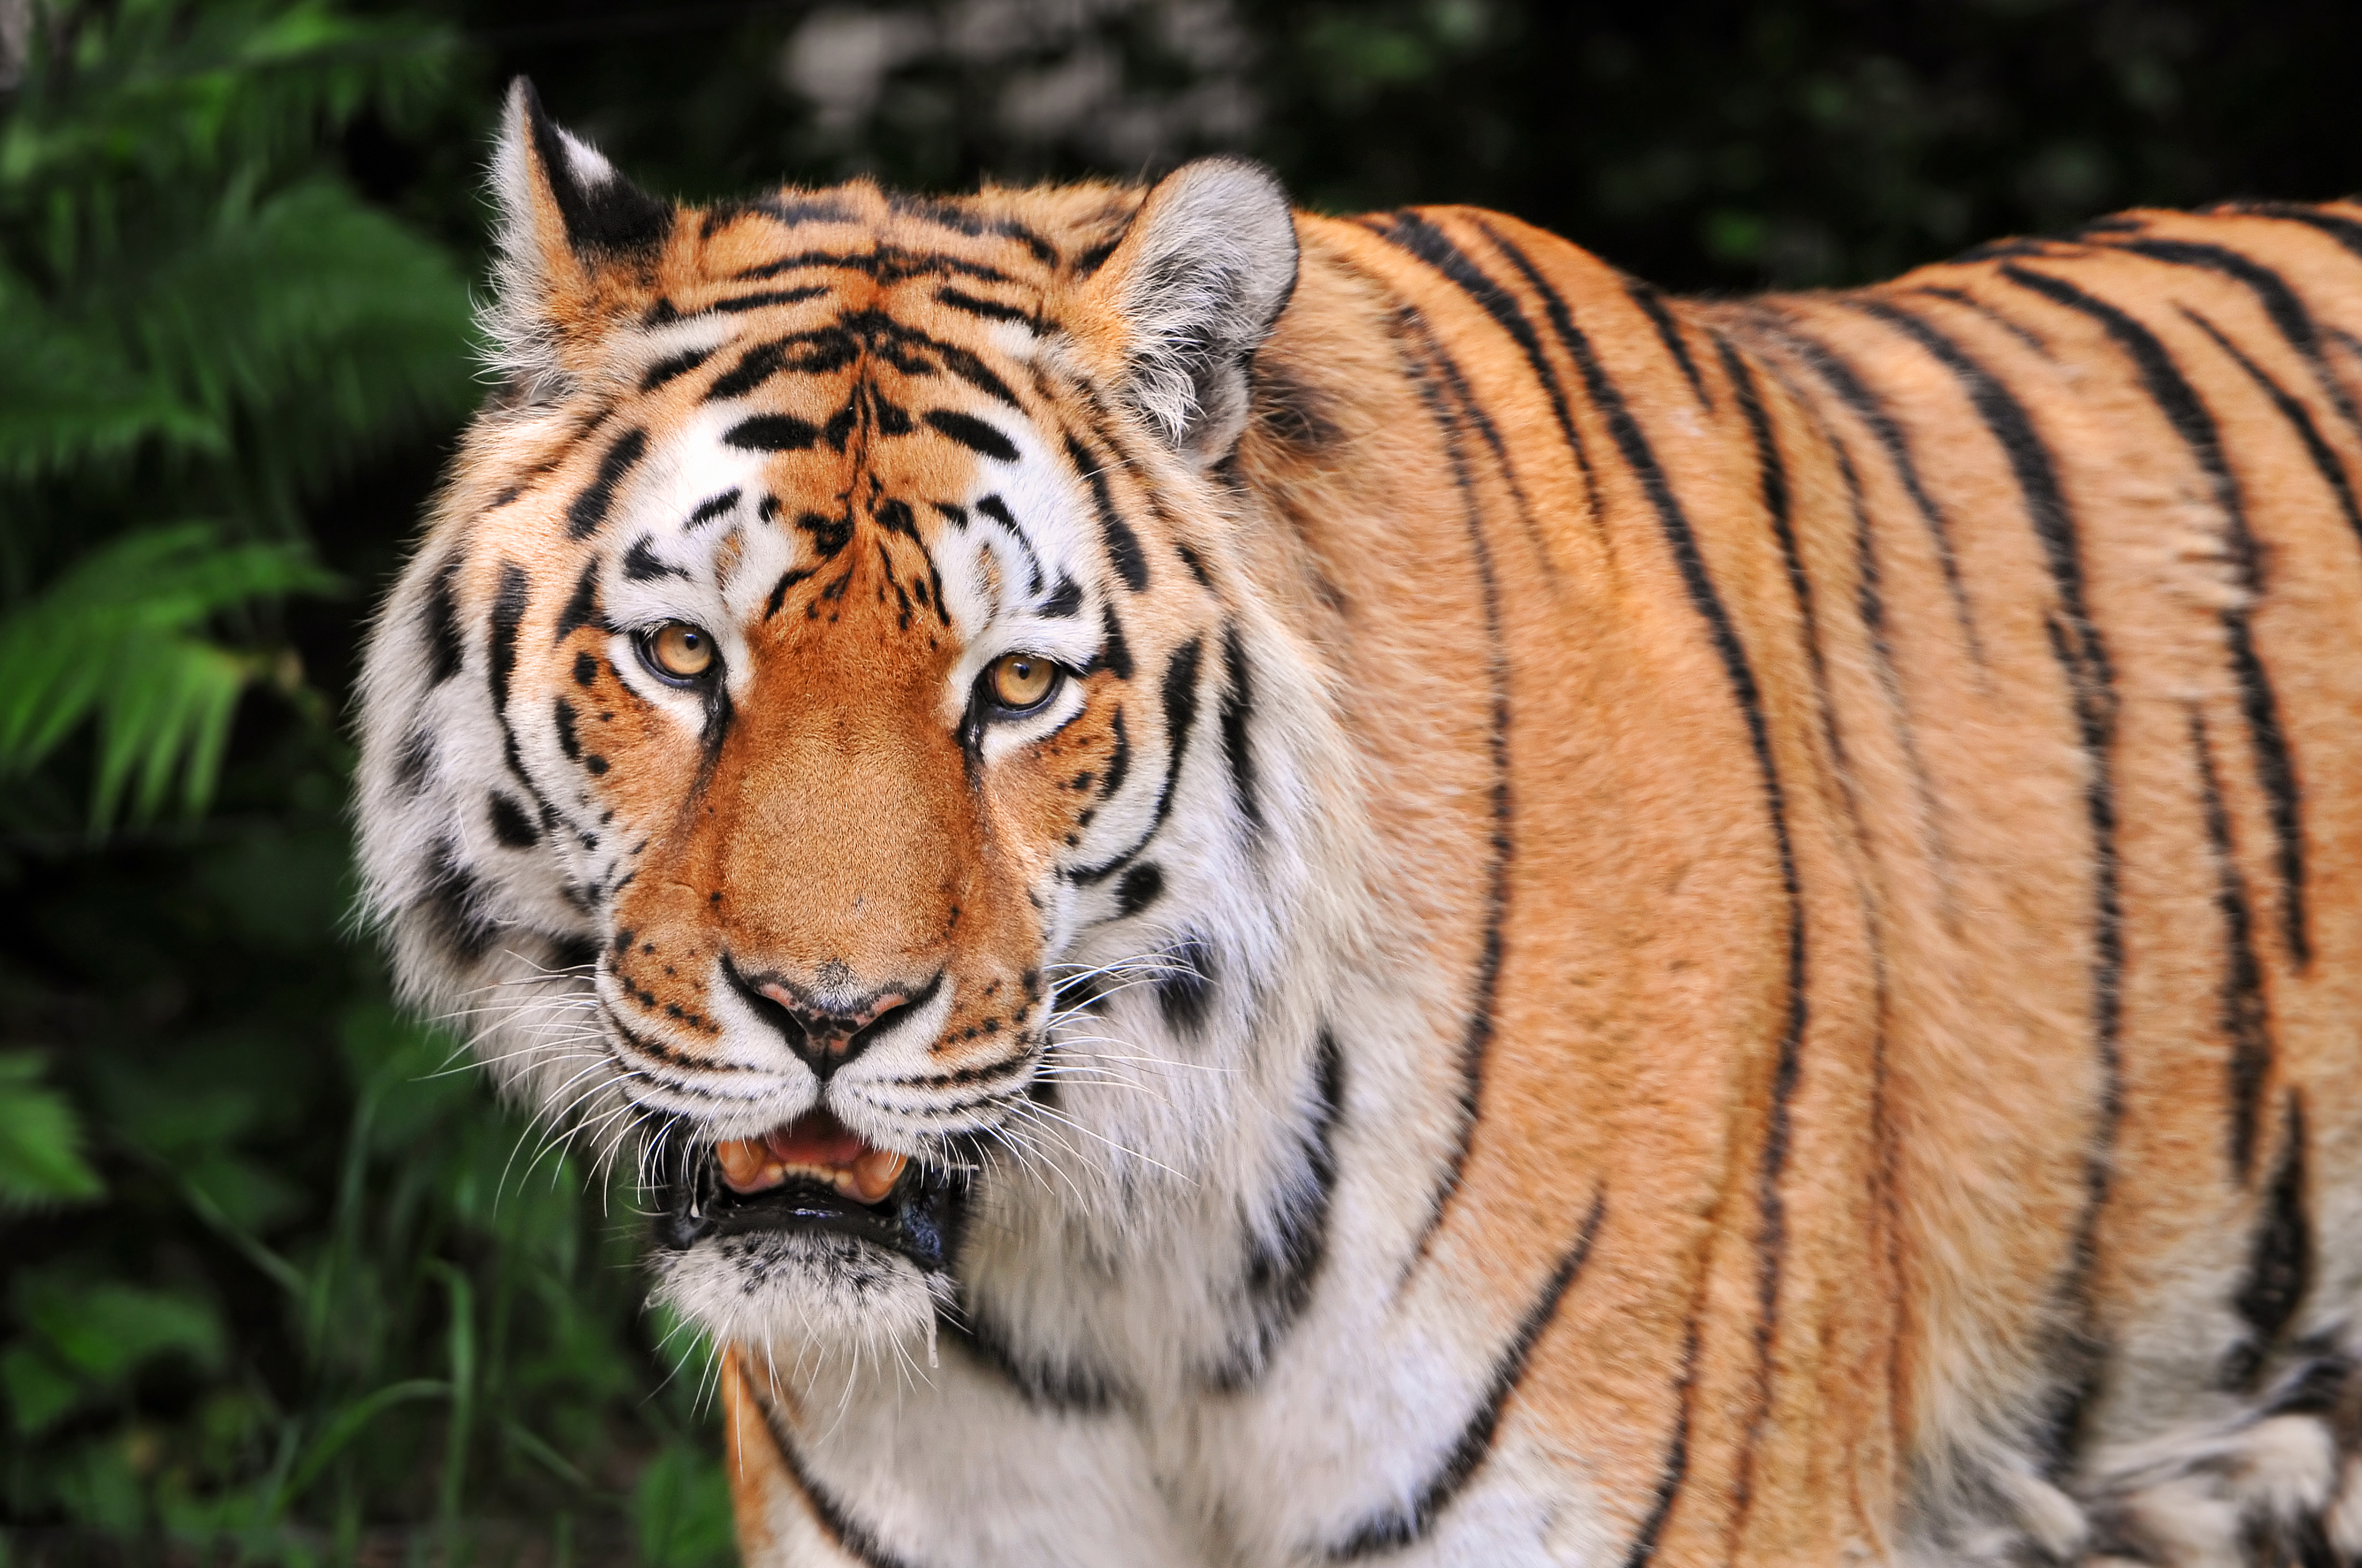 Tiger male